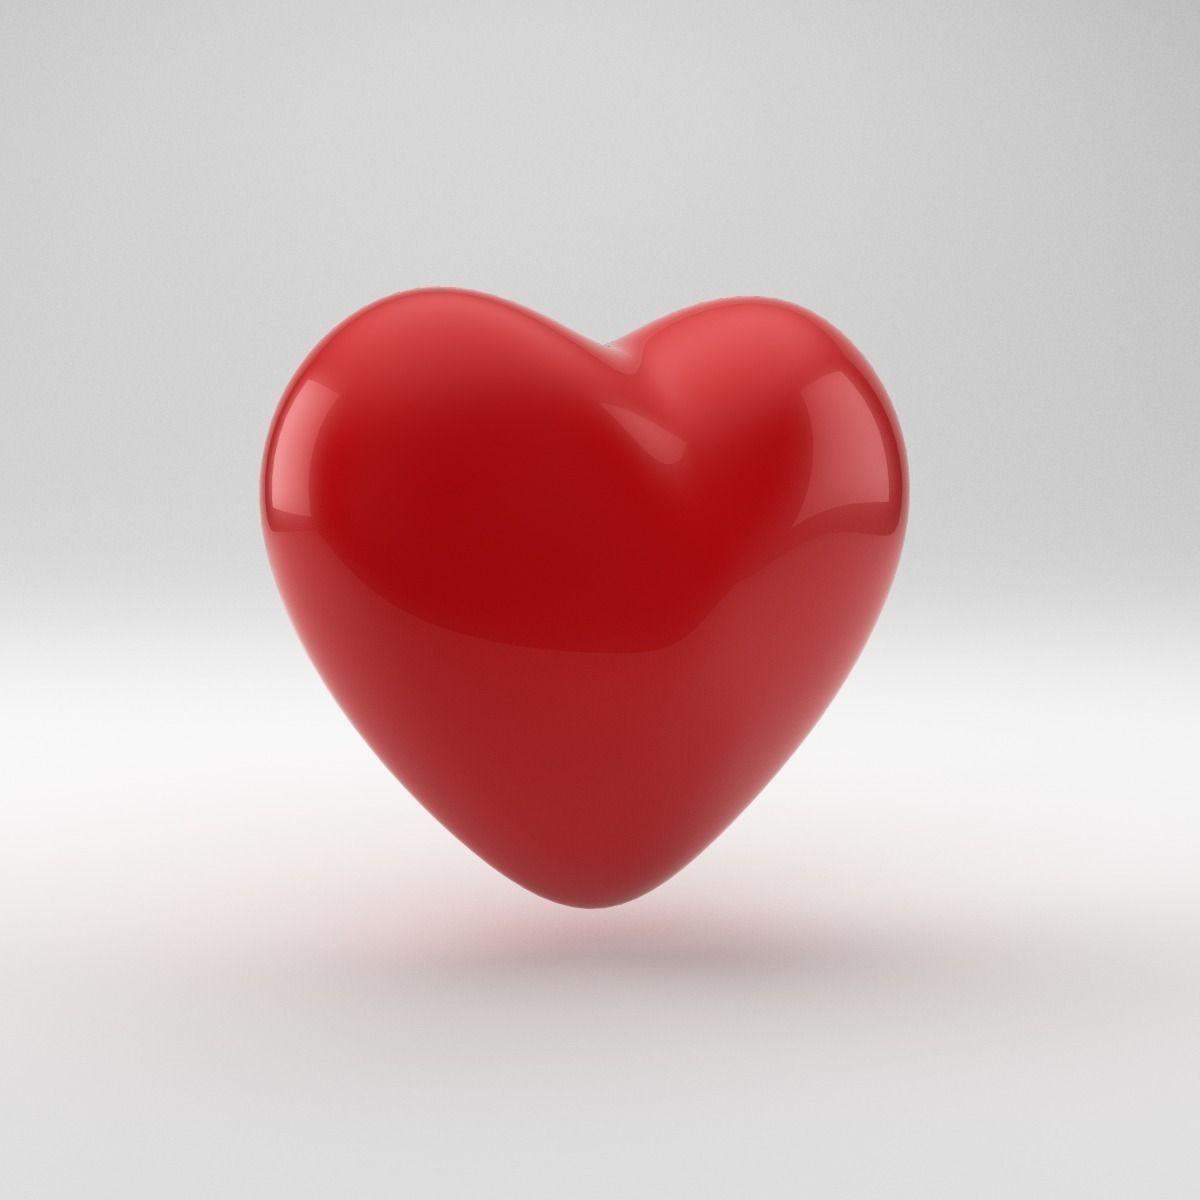 वैज्ञानिकों ने बनाया 3डी दिल,जो देगा मनुष्य को नया जीवन